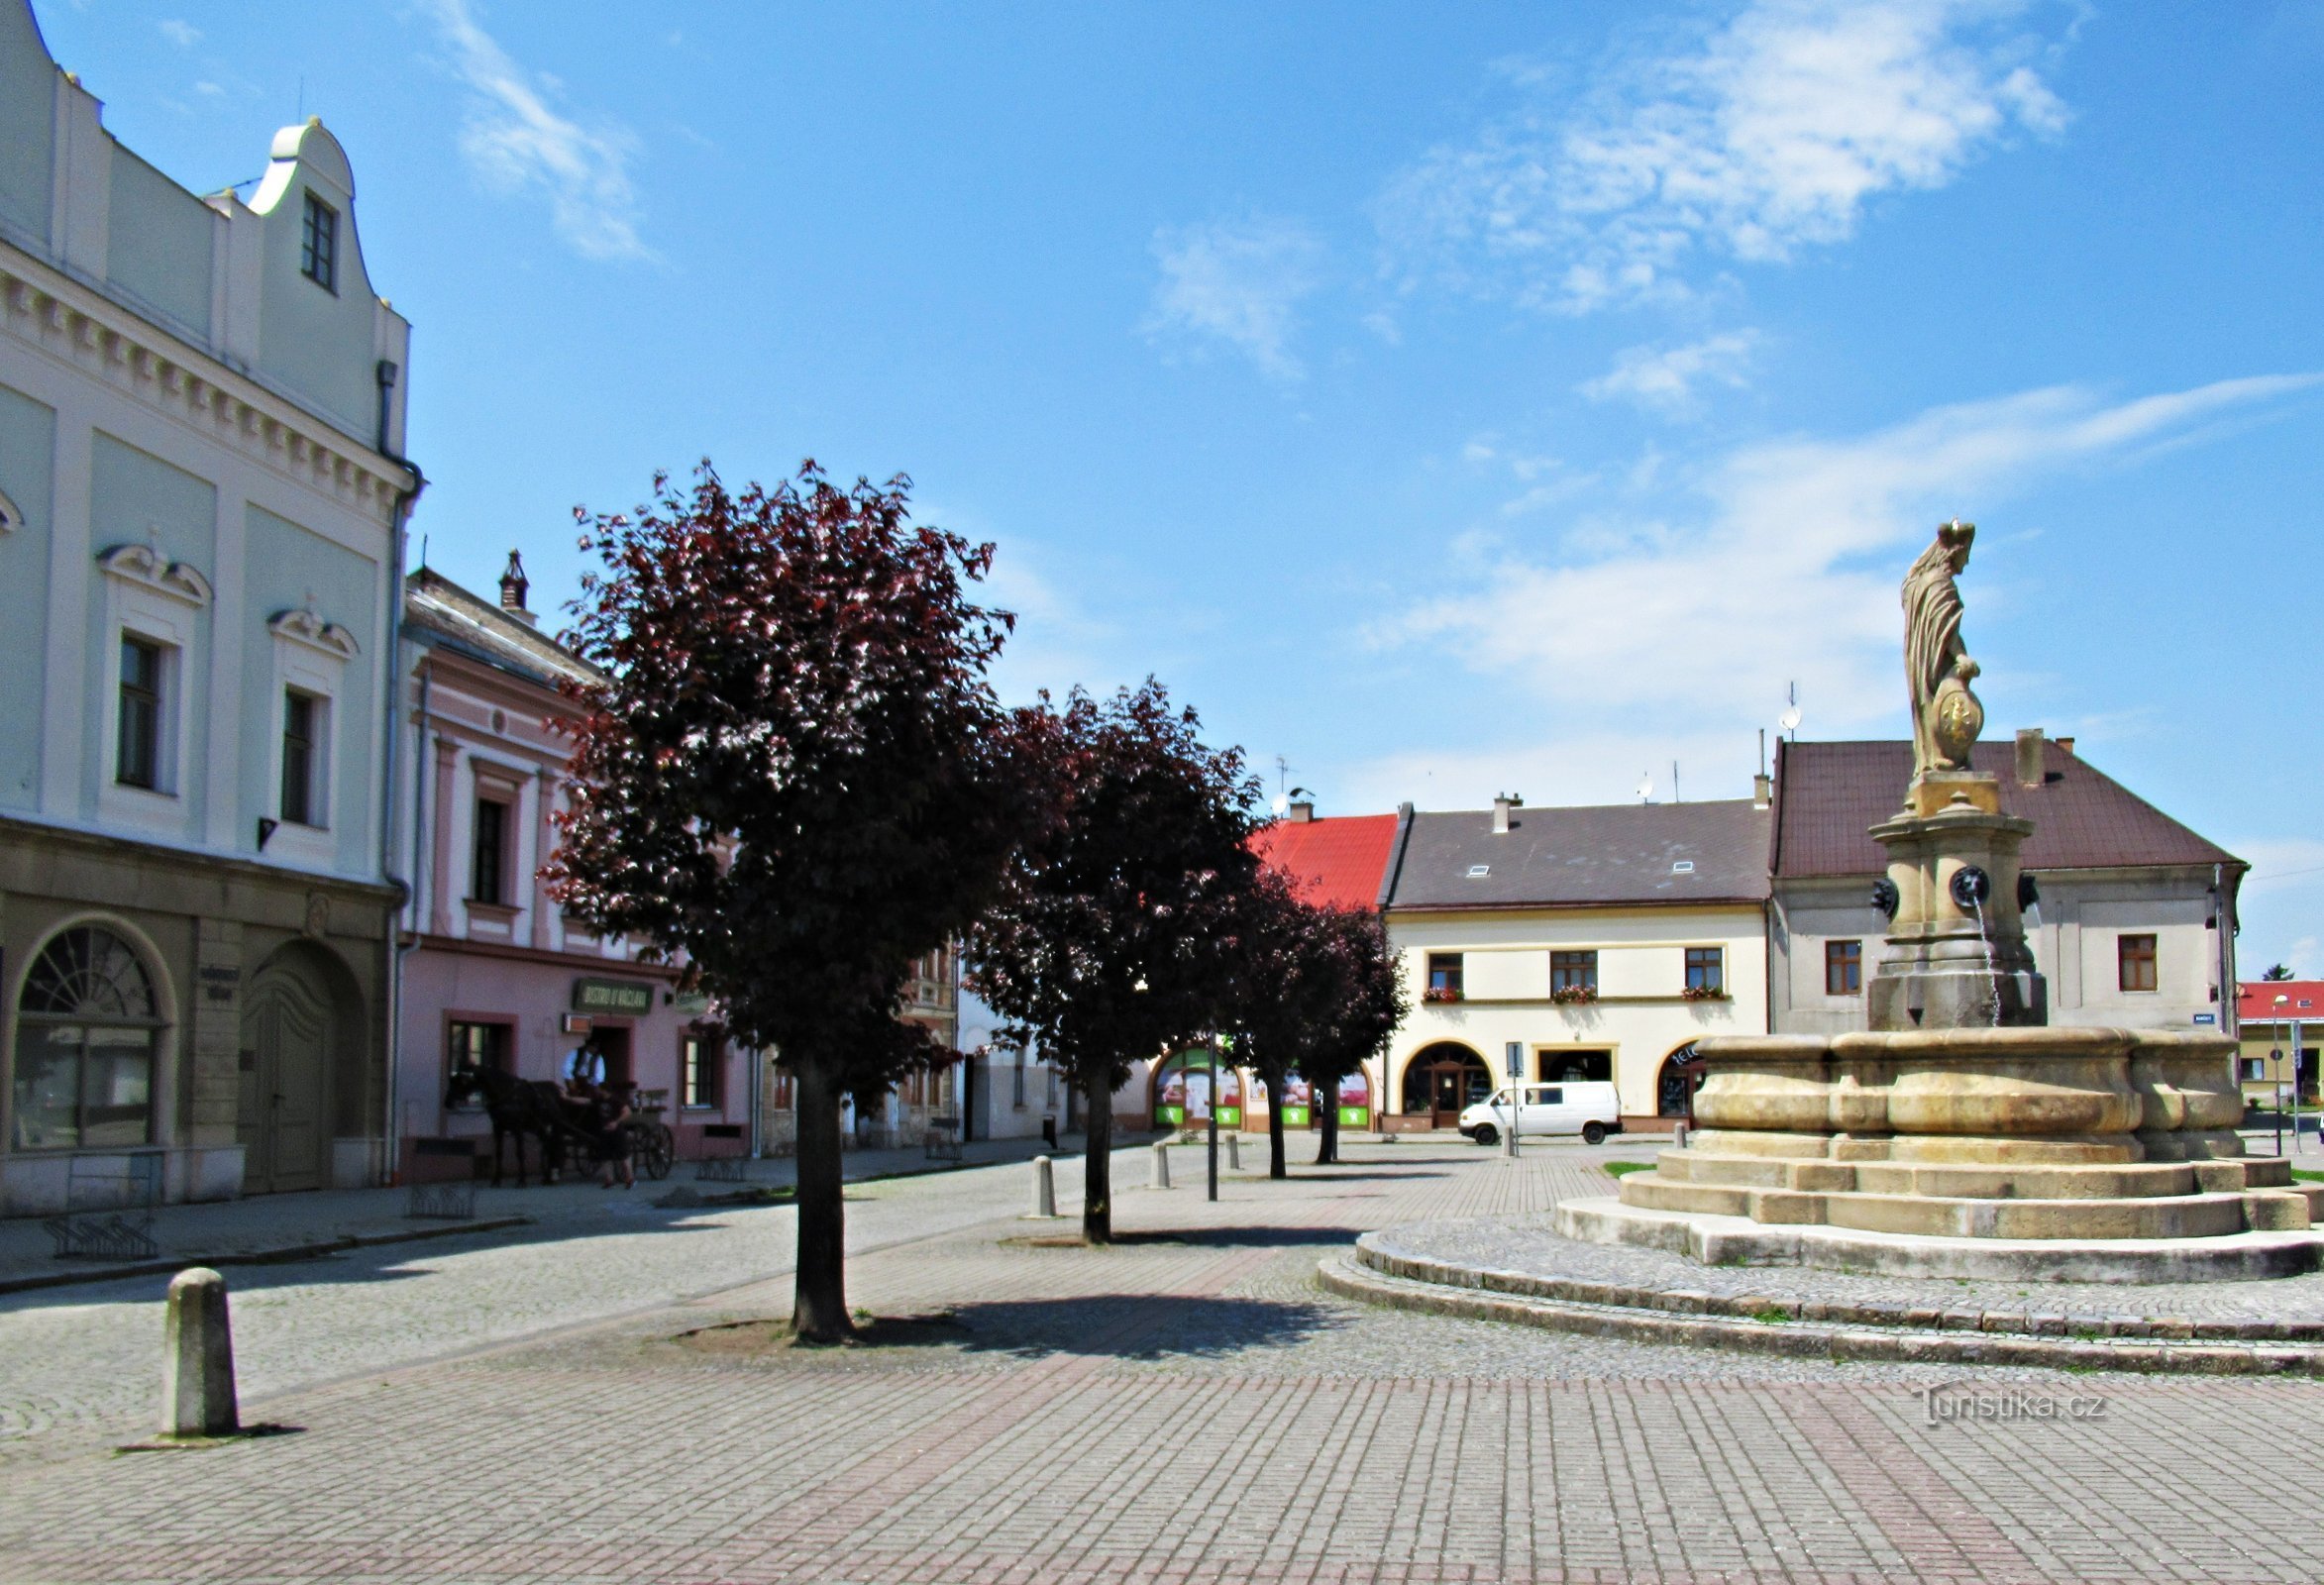 Đài phun nước lịch sử trên quảng trường ở Tovačov